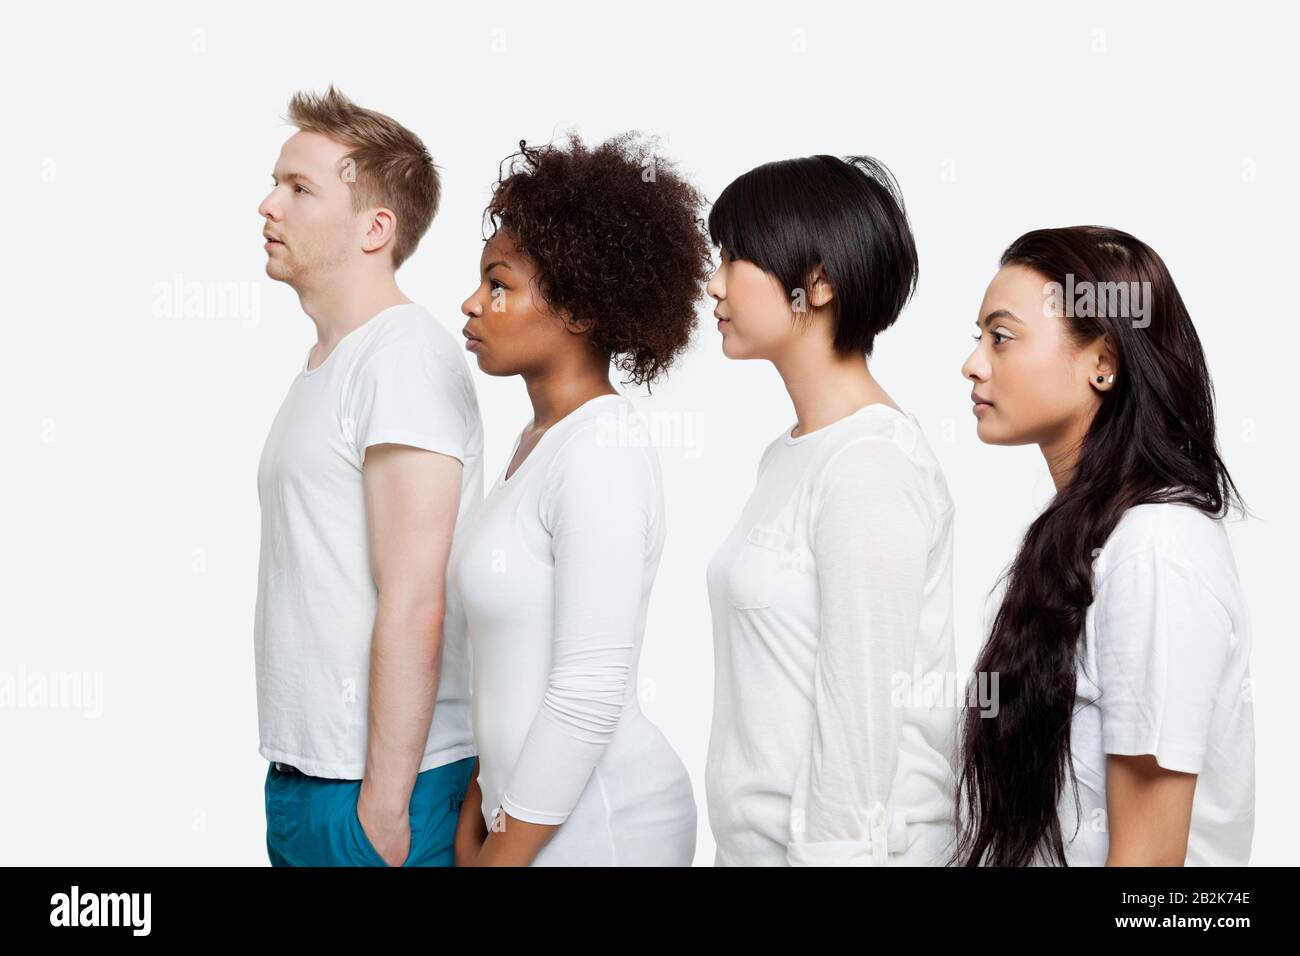 Vue latérale de jeunes amis multiethniques dans des casuaux se tenant en ligne sur fond blanc Banque D'Images